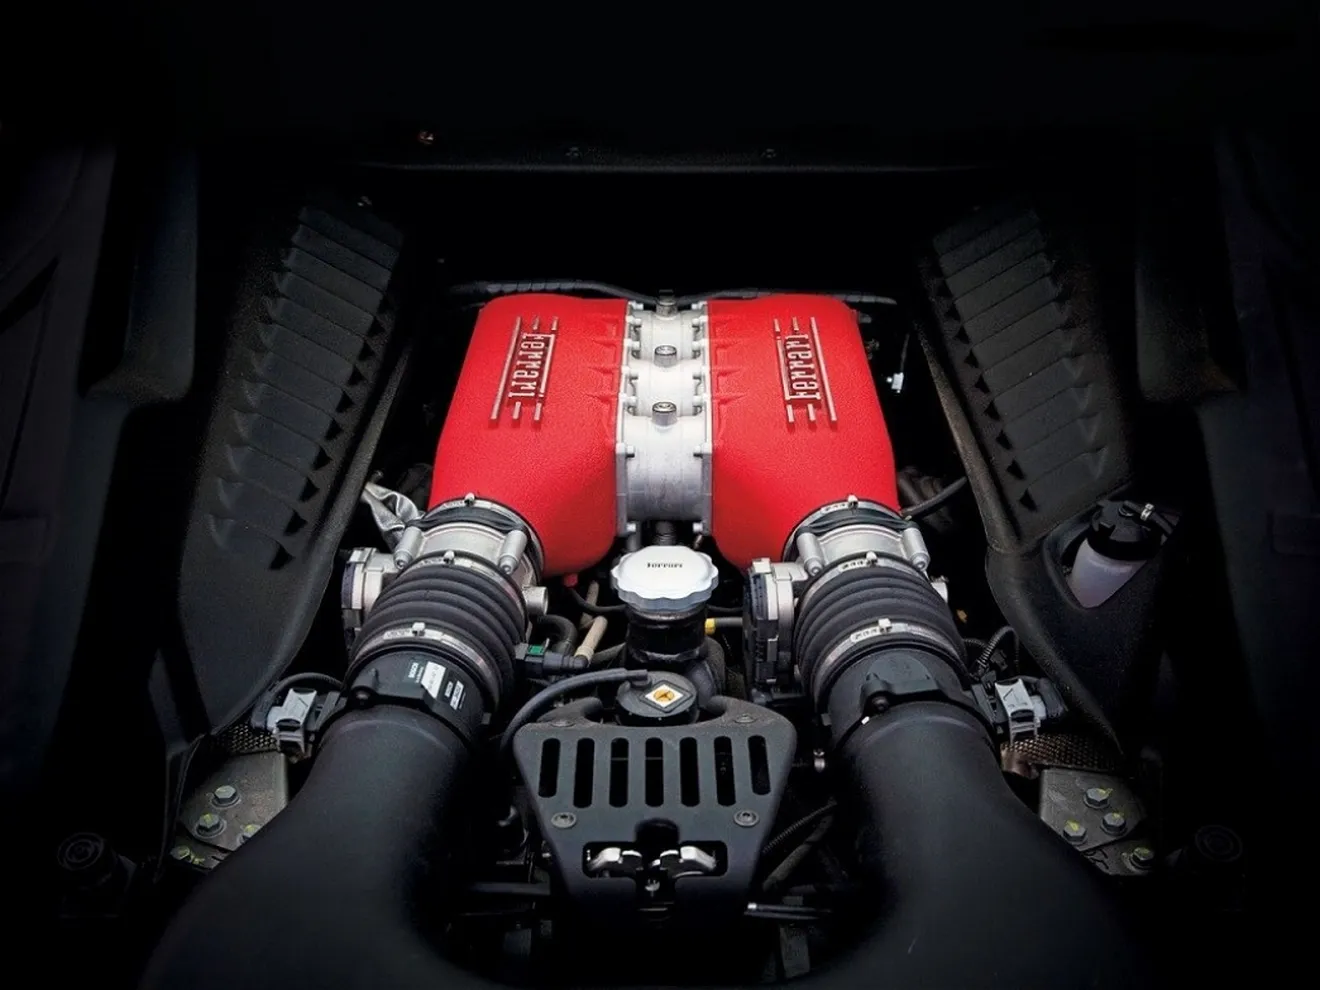 Motores Ferrari para Alfa Romeo y más detalles sobre el resurgir del Cuore Sportivo